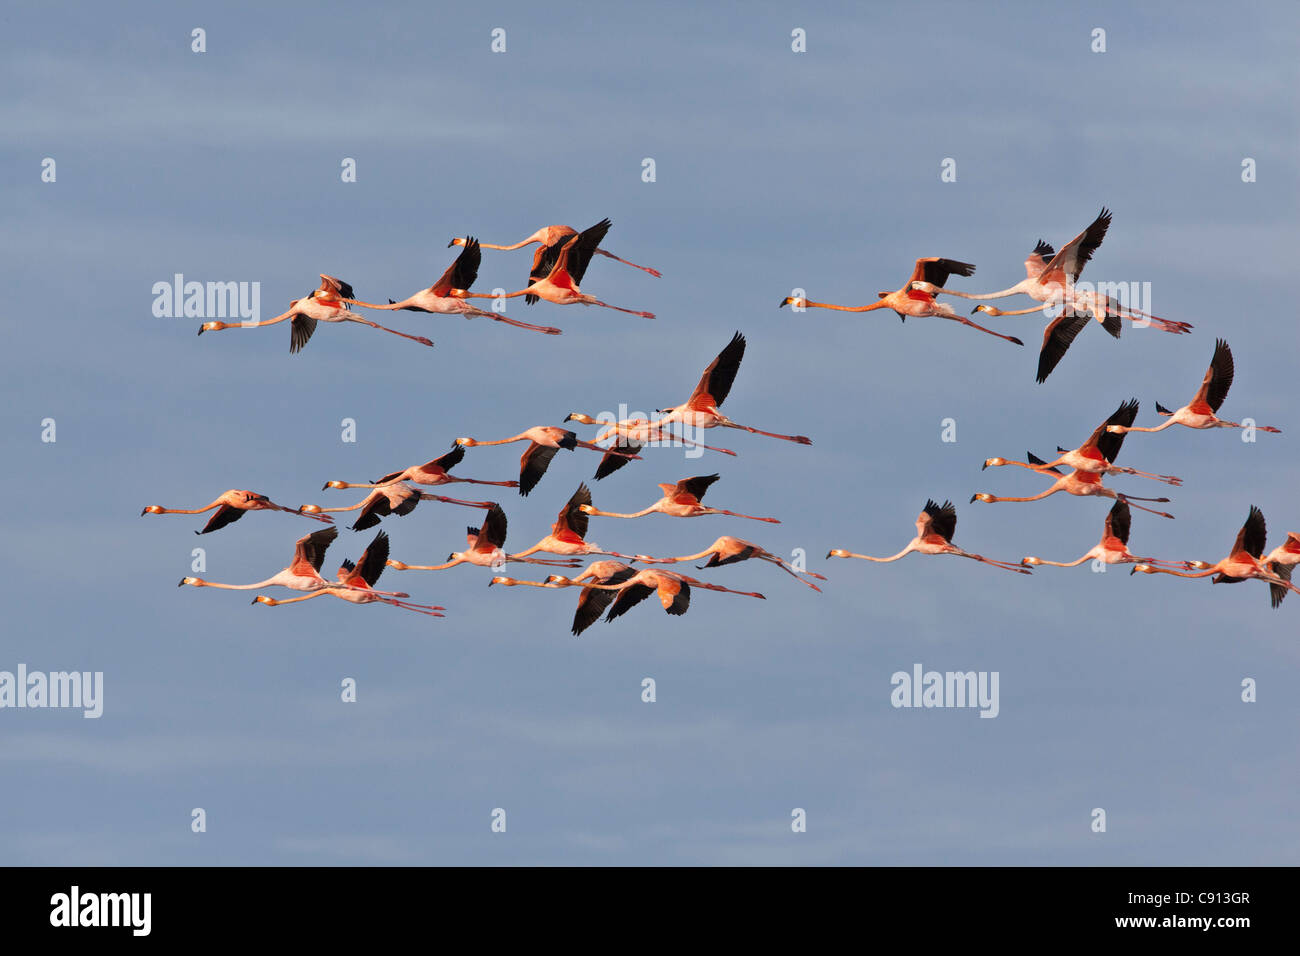 The Netherlands, Bonaire Island, Dutch Caribbean, Kralendijk, American or Caribbean  Flamingo ( Phoenicopterus ruber ). Stock Photo